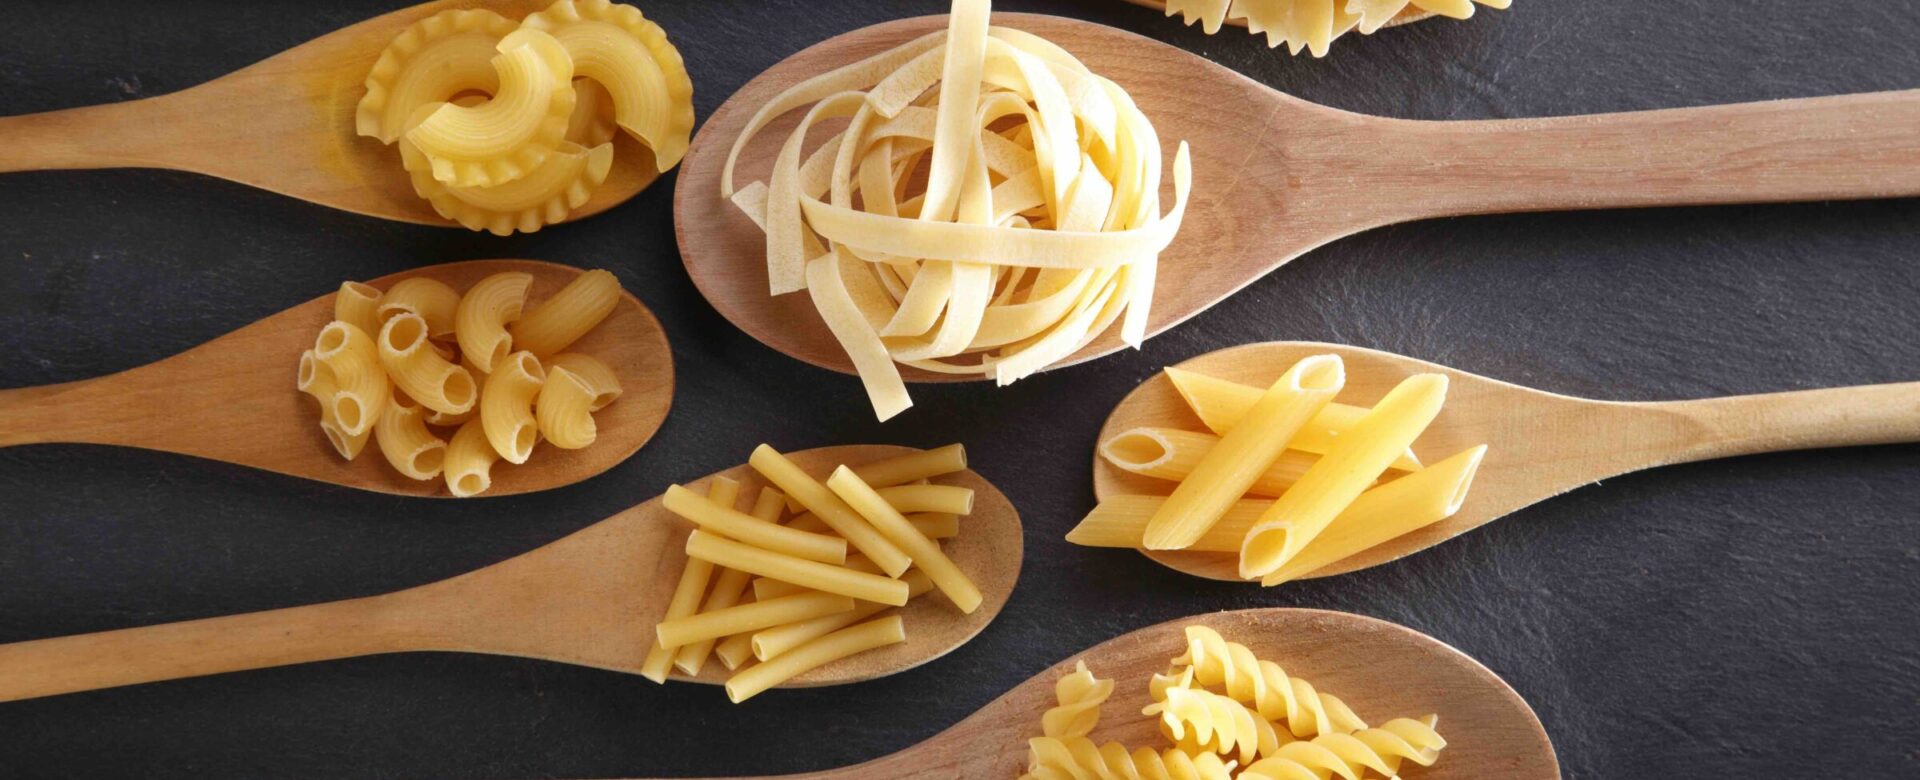 Hoeveel soorten pasta bestaan er?